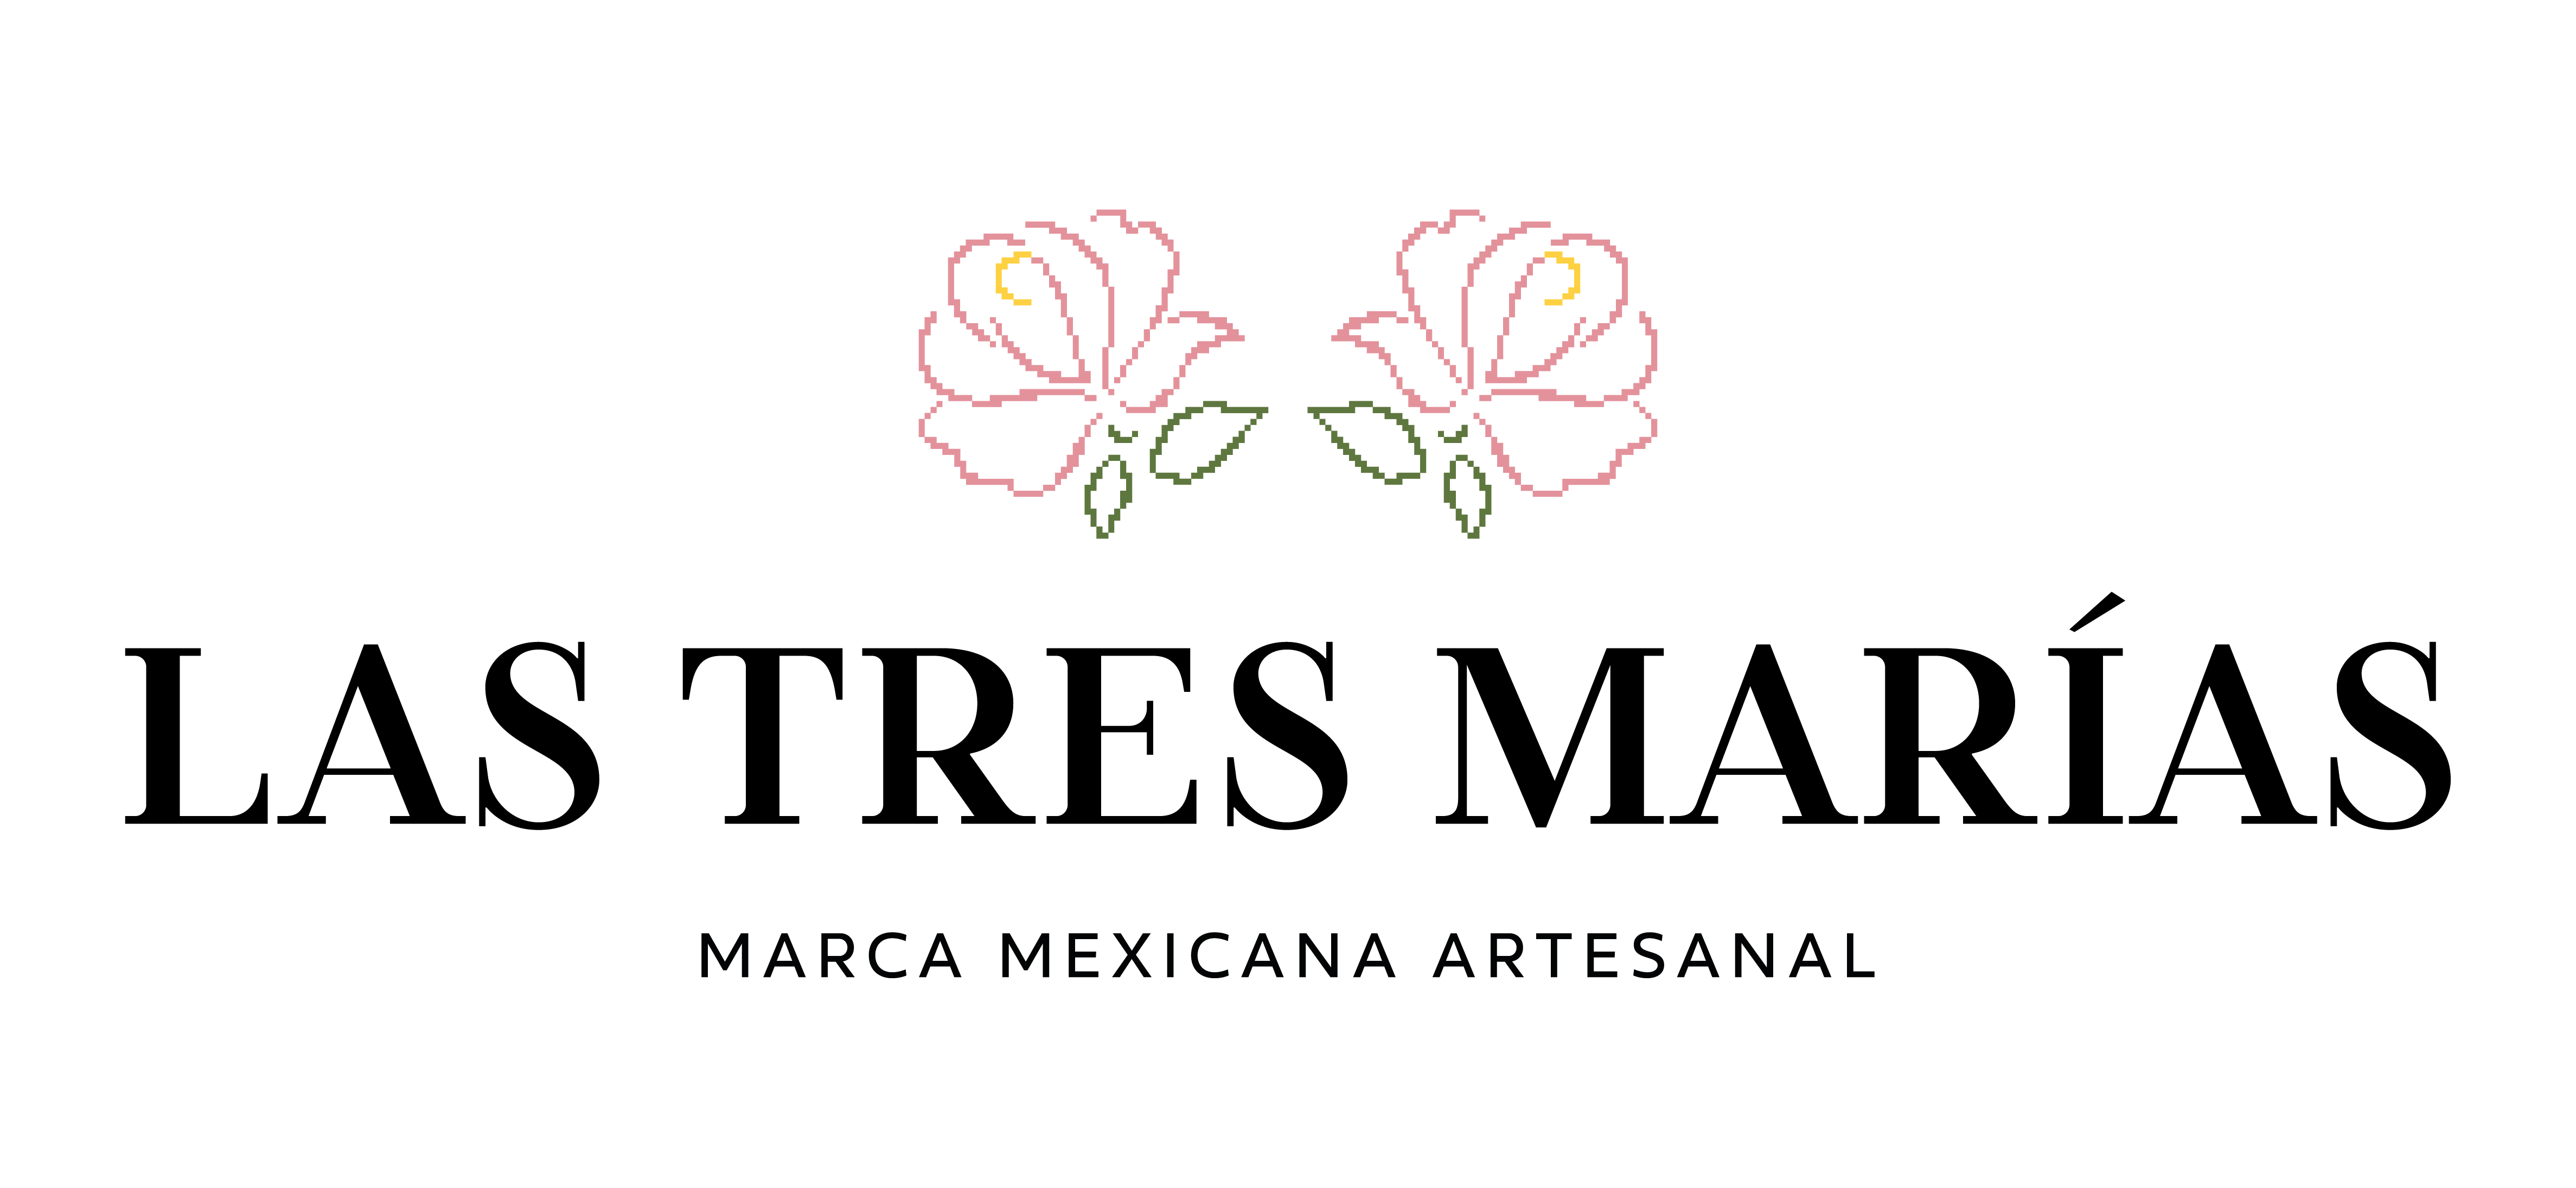 Las Marías | Mexicana Artesanal